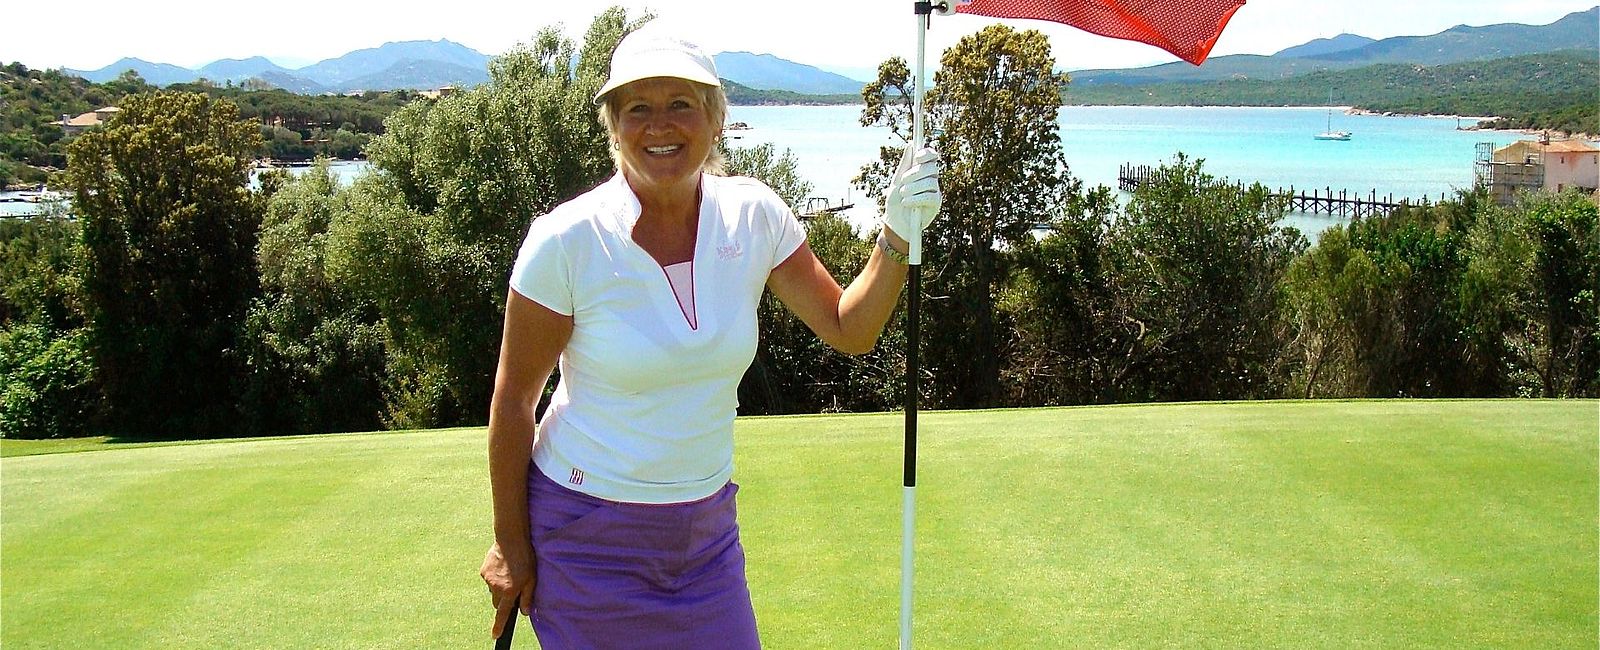  Elsa Honeckers
Golf-Blog 
